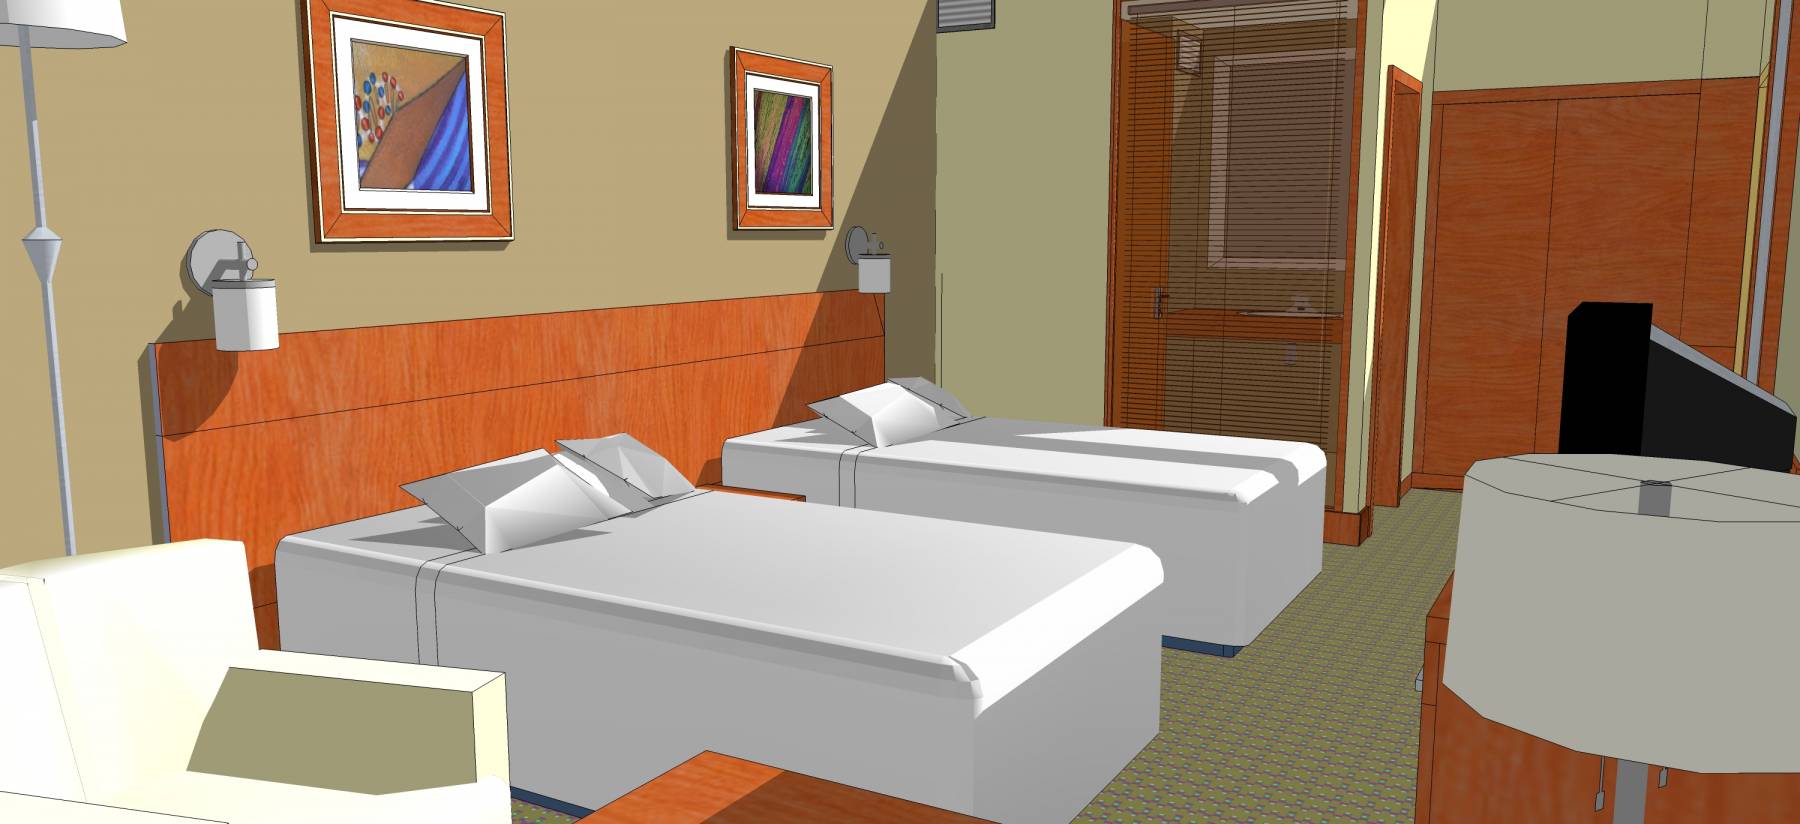 酒店客房室内模型